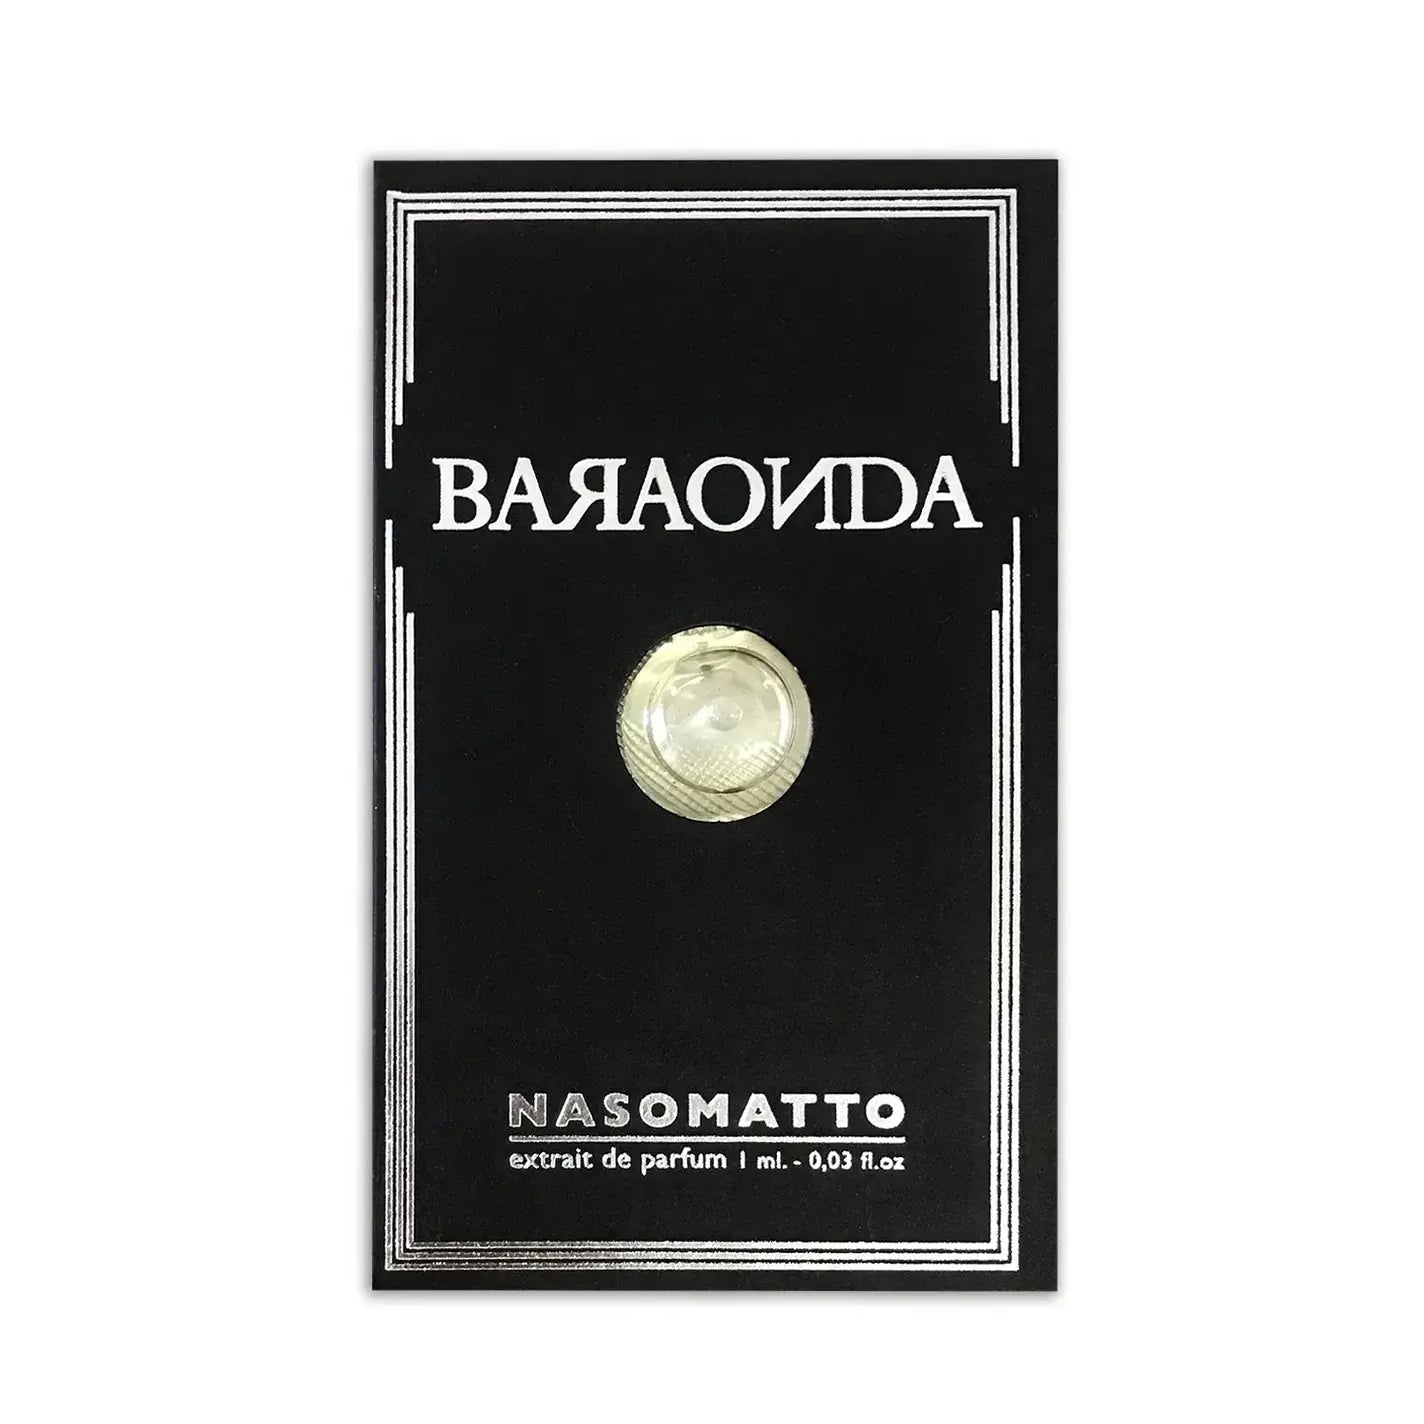 Nasomatto Baraonda Extrait de Parfum 1ml sample Nasomatto